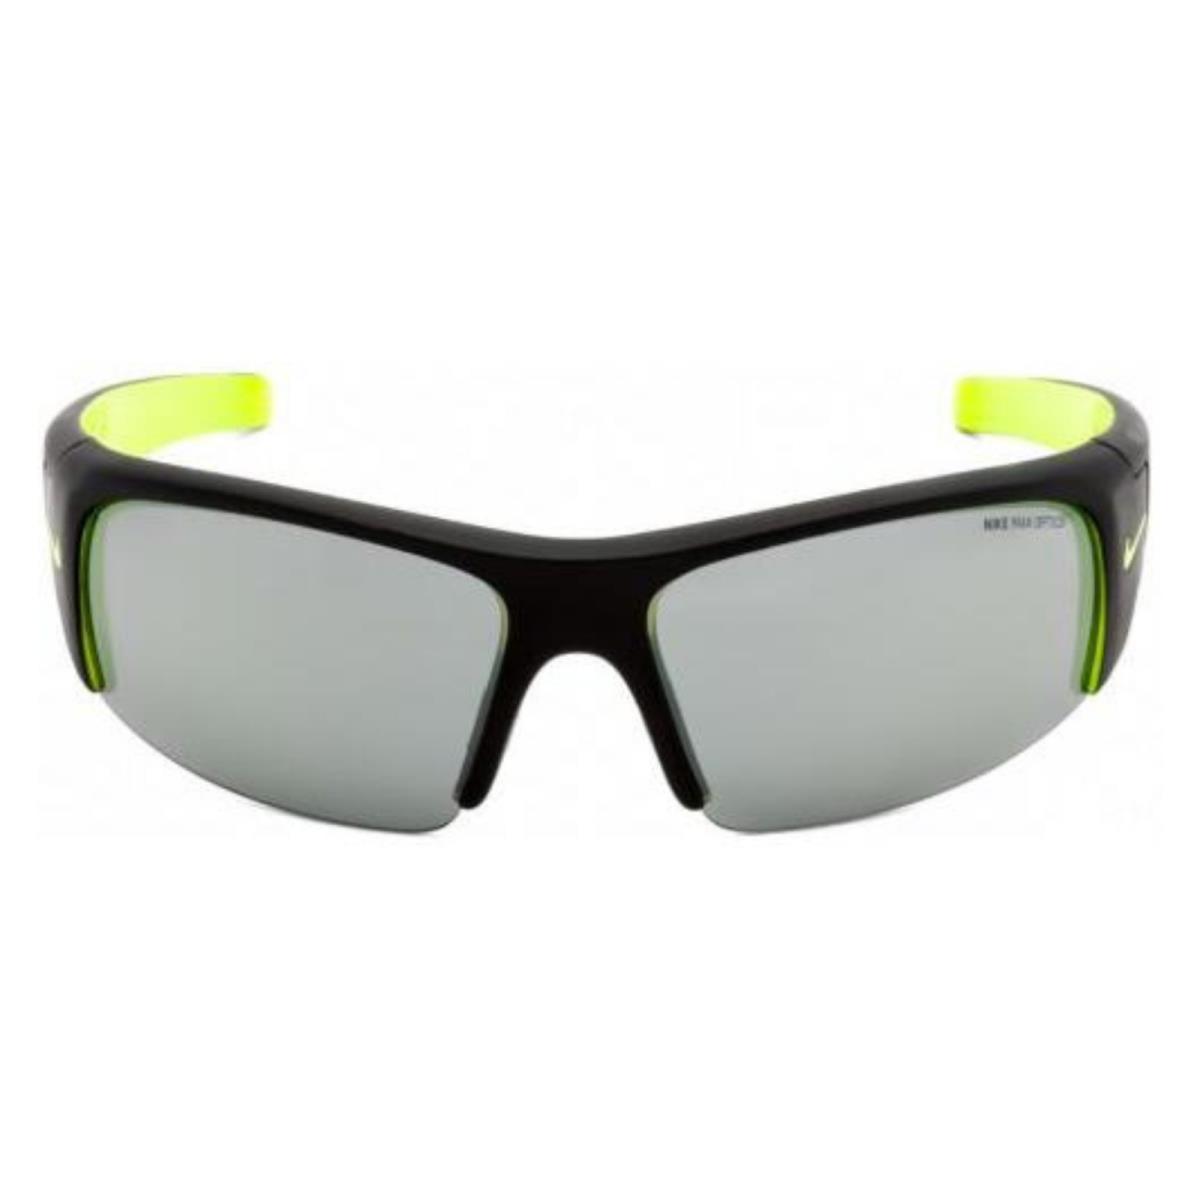 Nike Sunglasses Diverge EV0325 007 64 Volt Lens 64mm 125mm 13mm with Case - Frame: Black, Lens: Volt